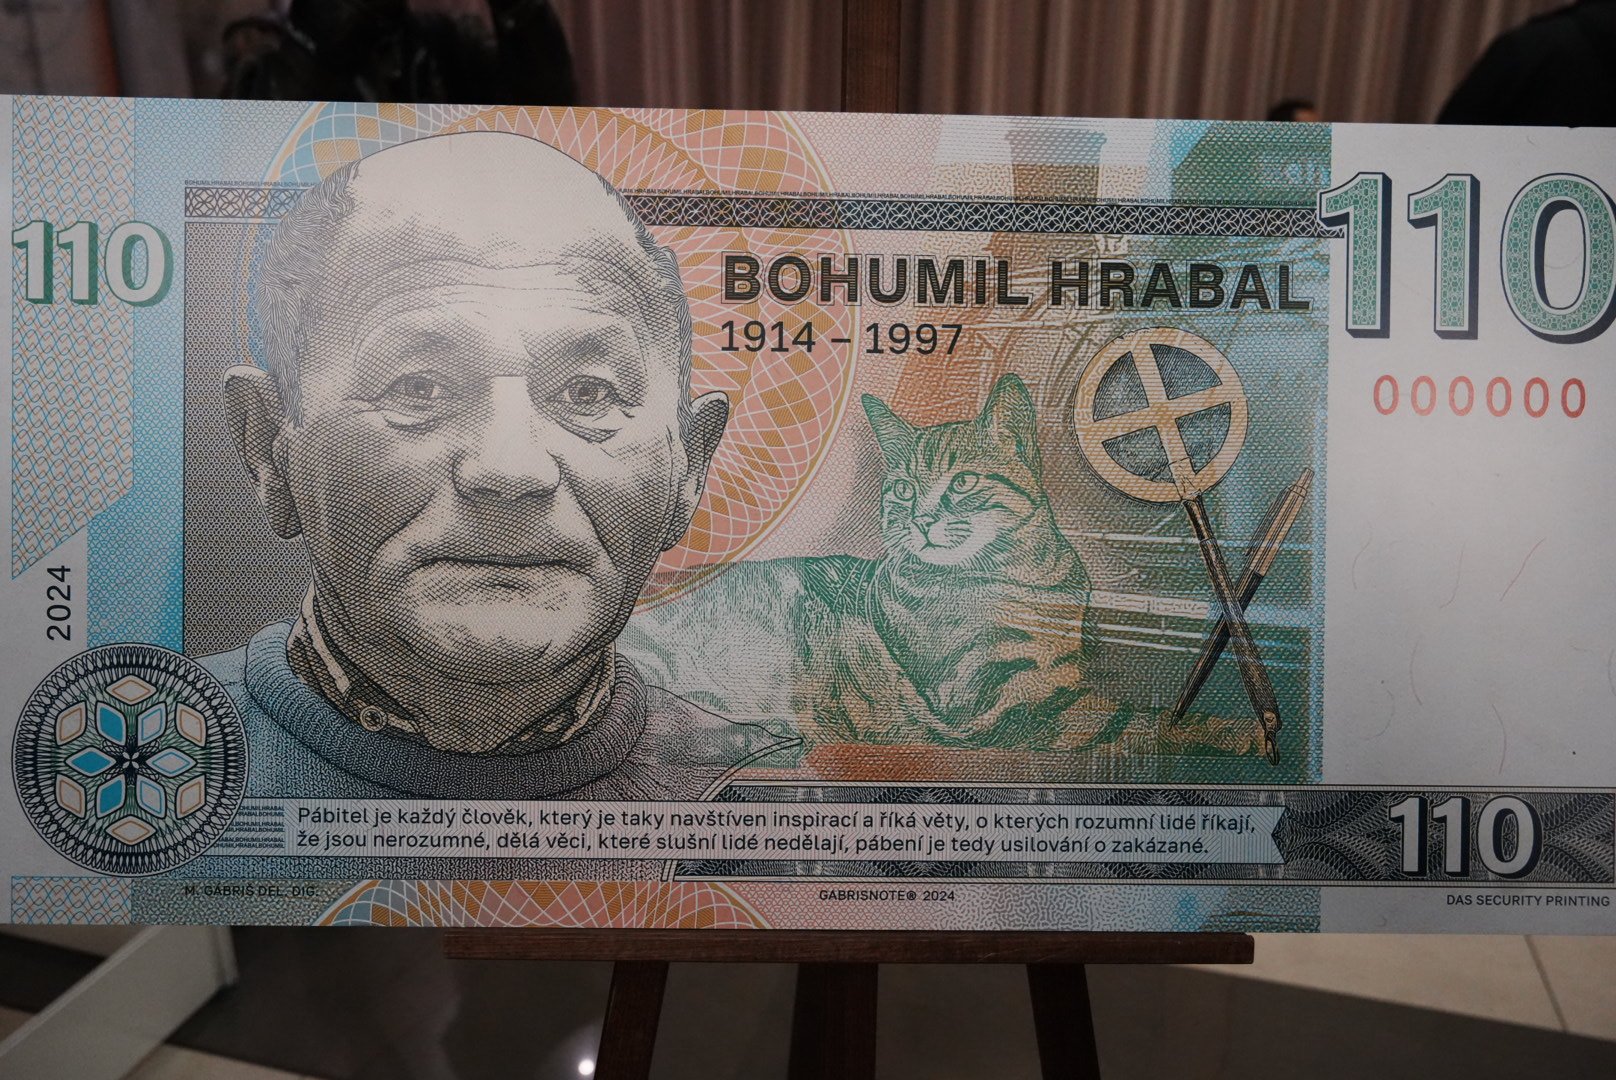 Polabské muzeum rámci veletrhu Sběratel představilo pamětní bankovku ke 110. výročí narození Bohumila Hrabala